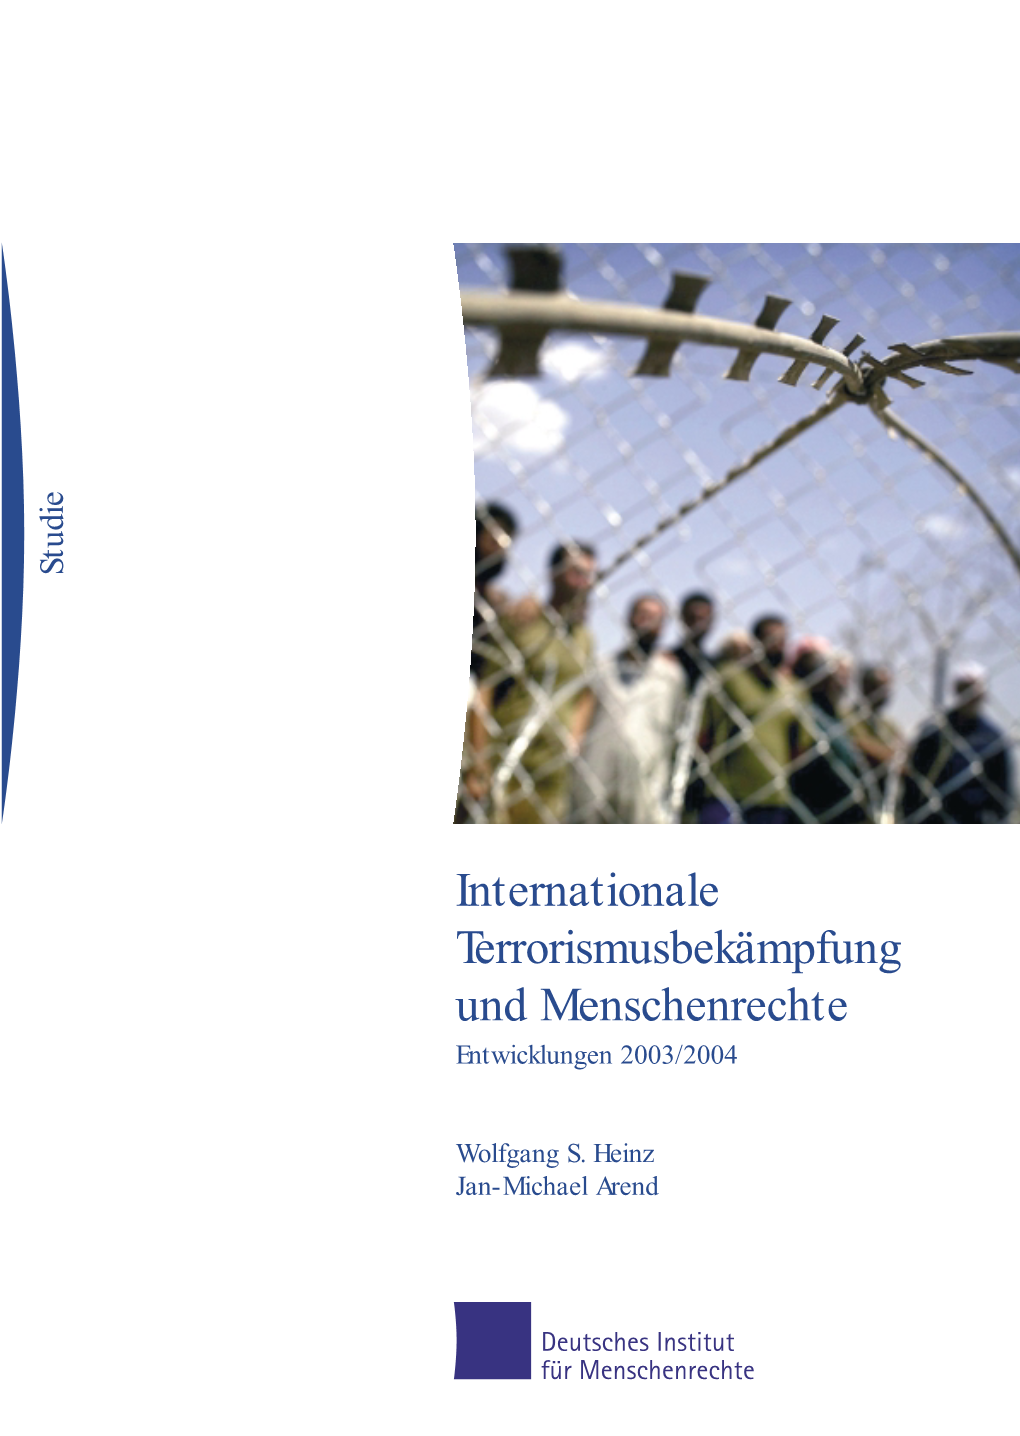 Internationale Terrorismusbekämpfung Und Menschenrechte Entwicklungen 2003/2004 Wolfgang S